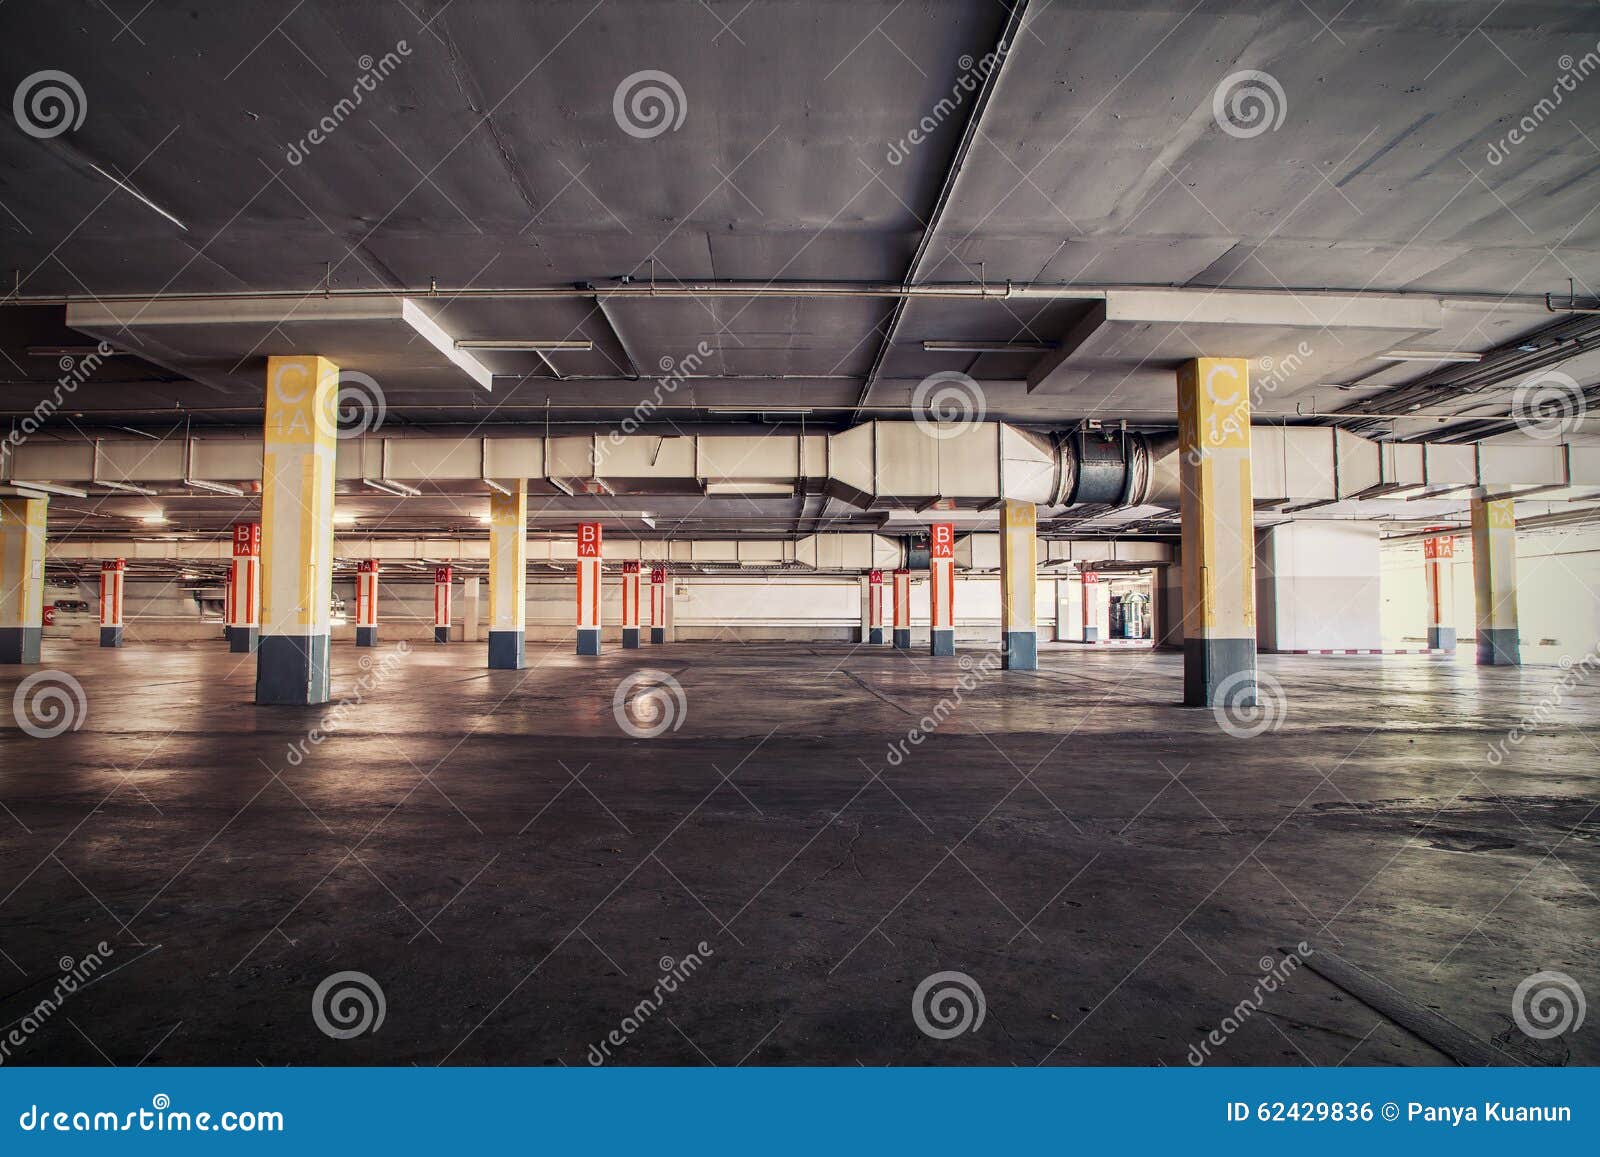 Parking Garag Interior, Industrial Building,Empty Underground Pa